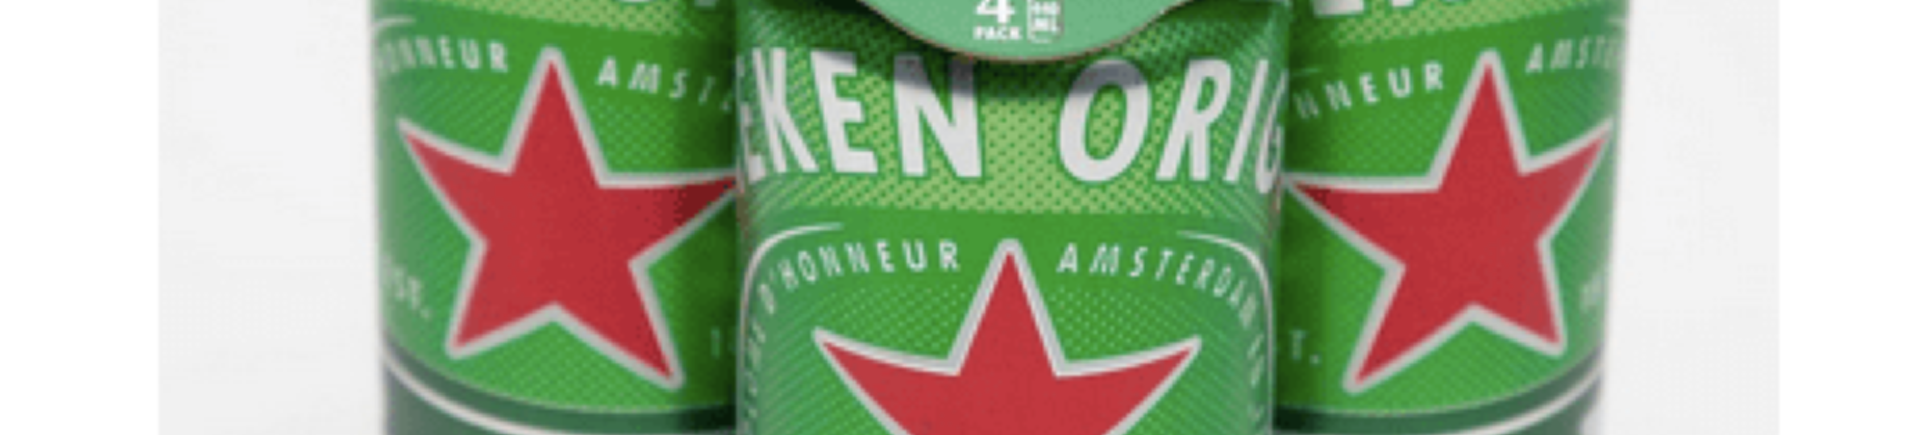 Heineken-UK-Beer